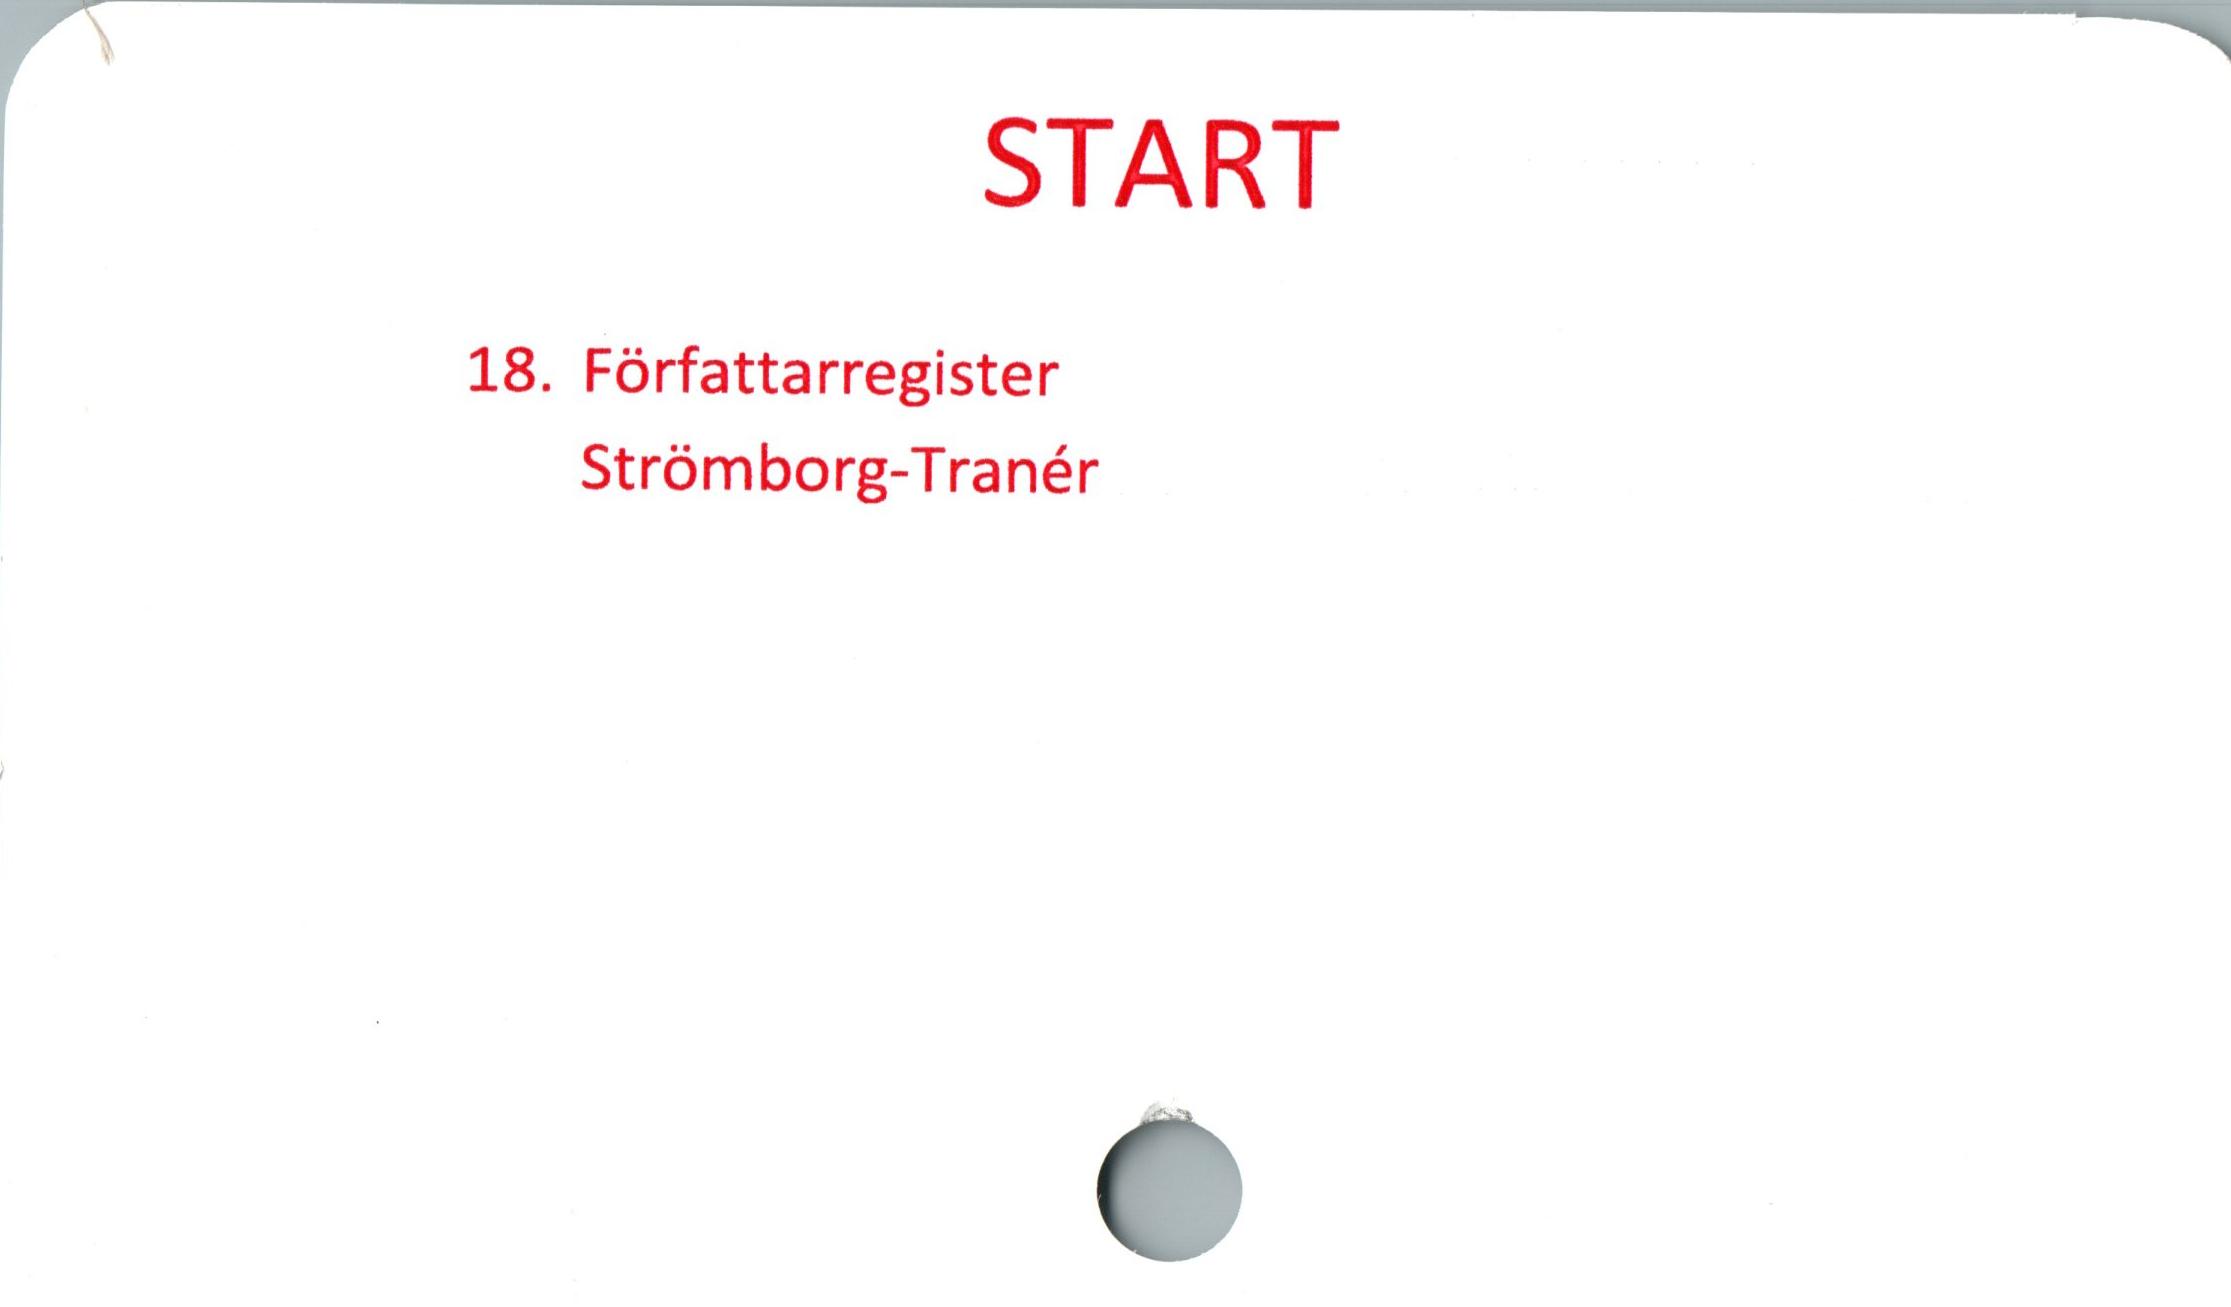  ﻿START

18. Författarregister
Strömborg-Tranér

#